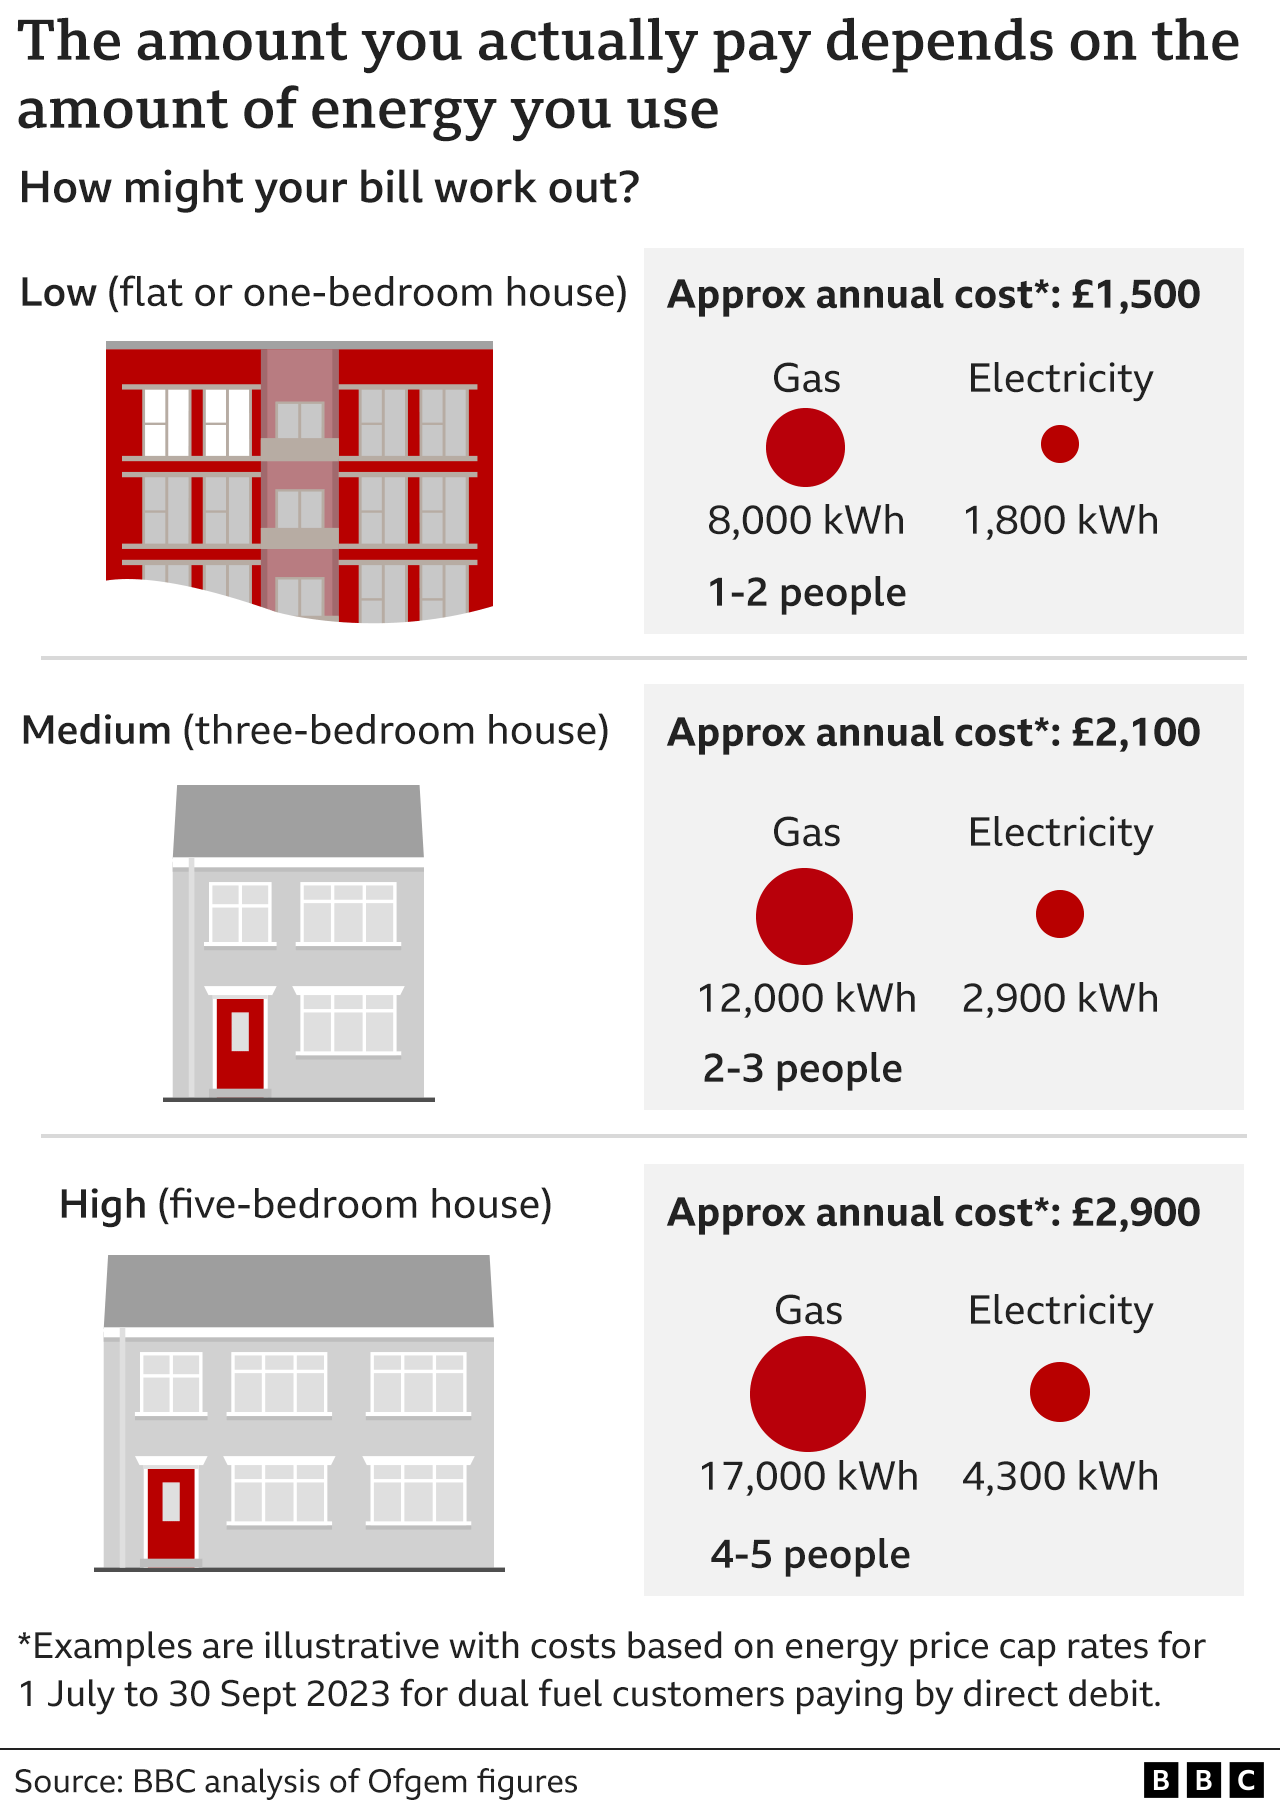 Gráfico que muestra cómo los distintos hogares pagarán facturas de energía diferentes